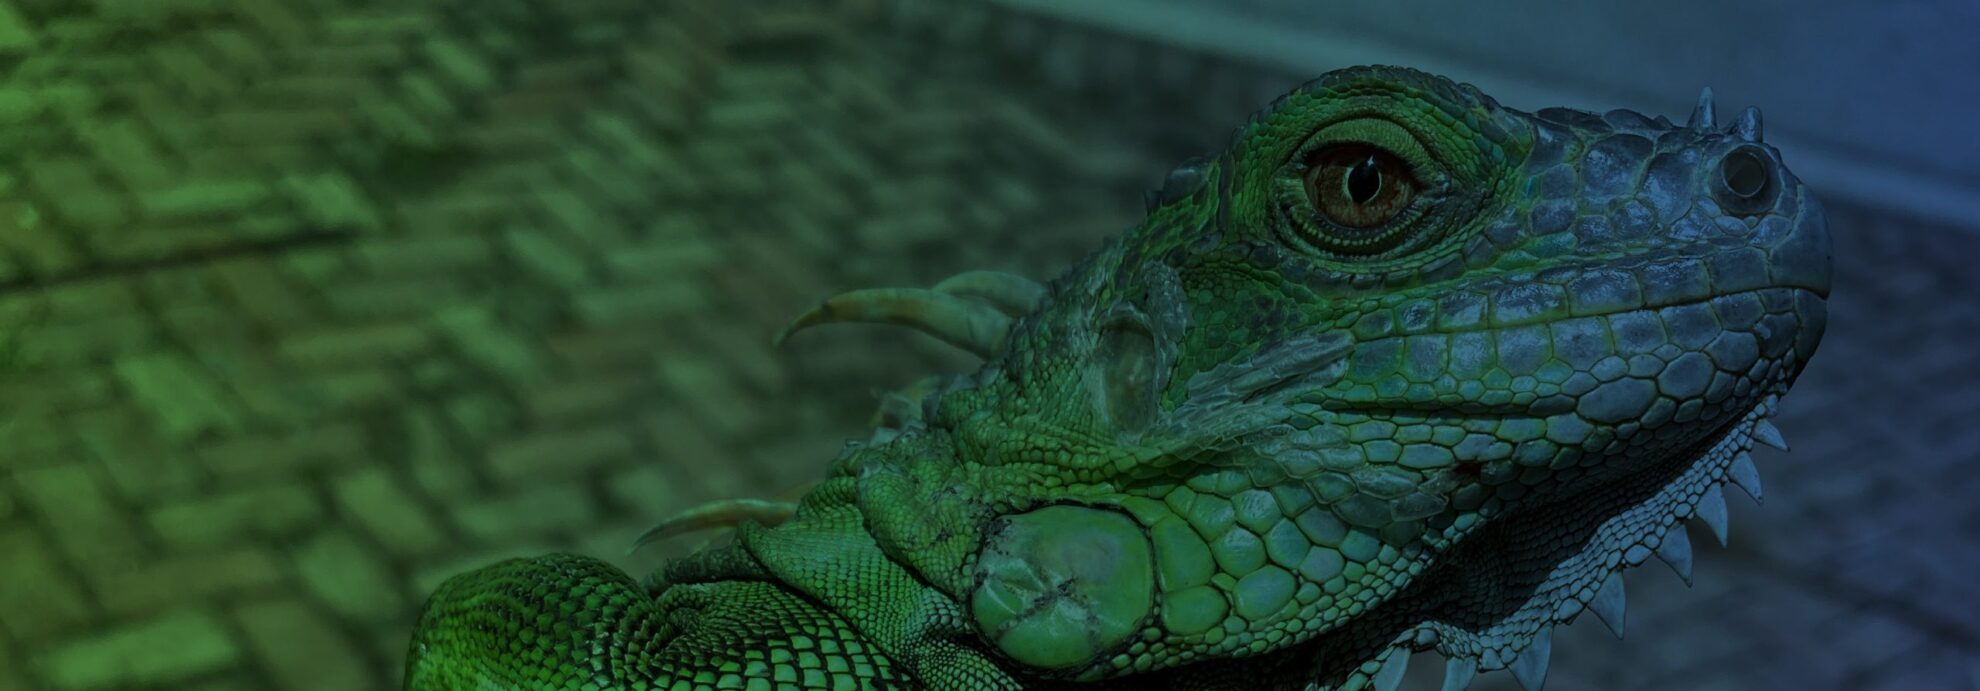 green iguana in okeechobee fl